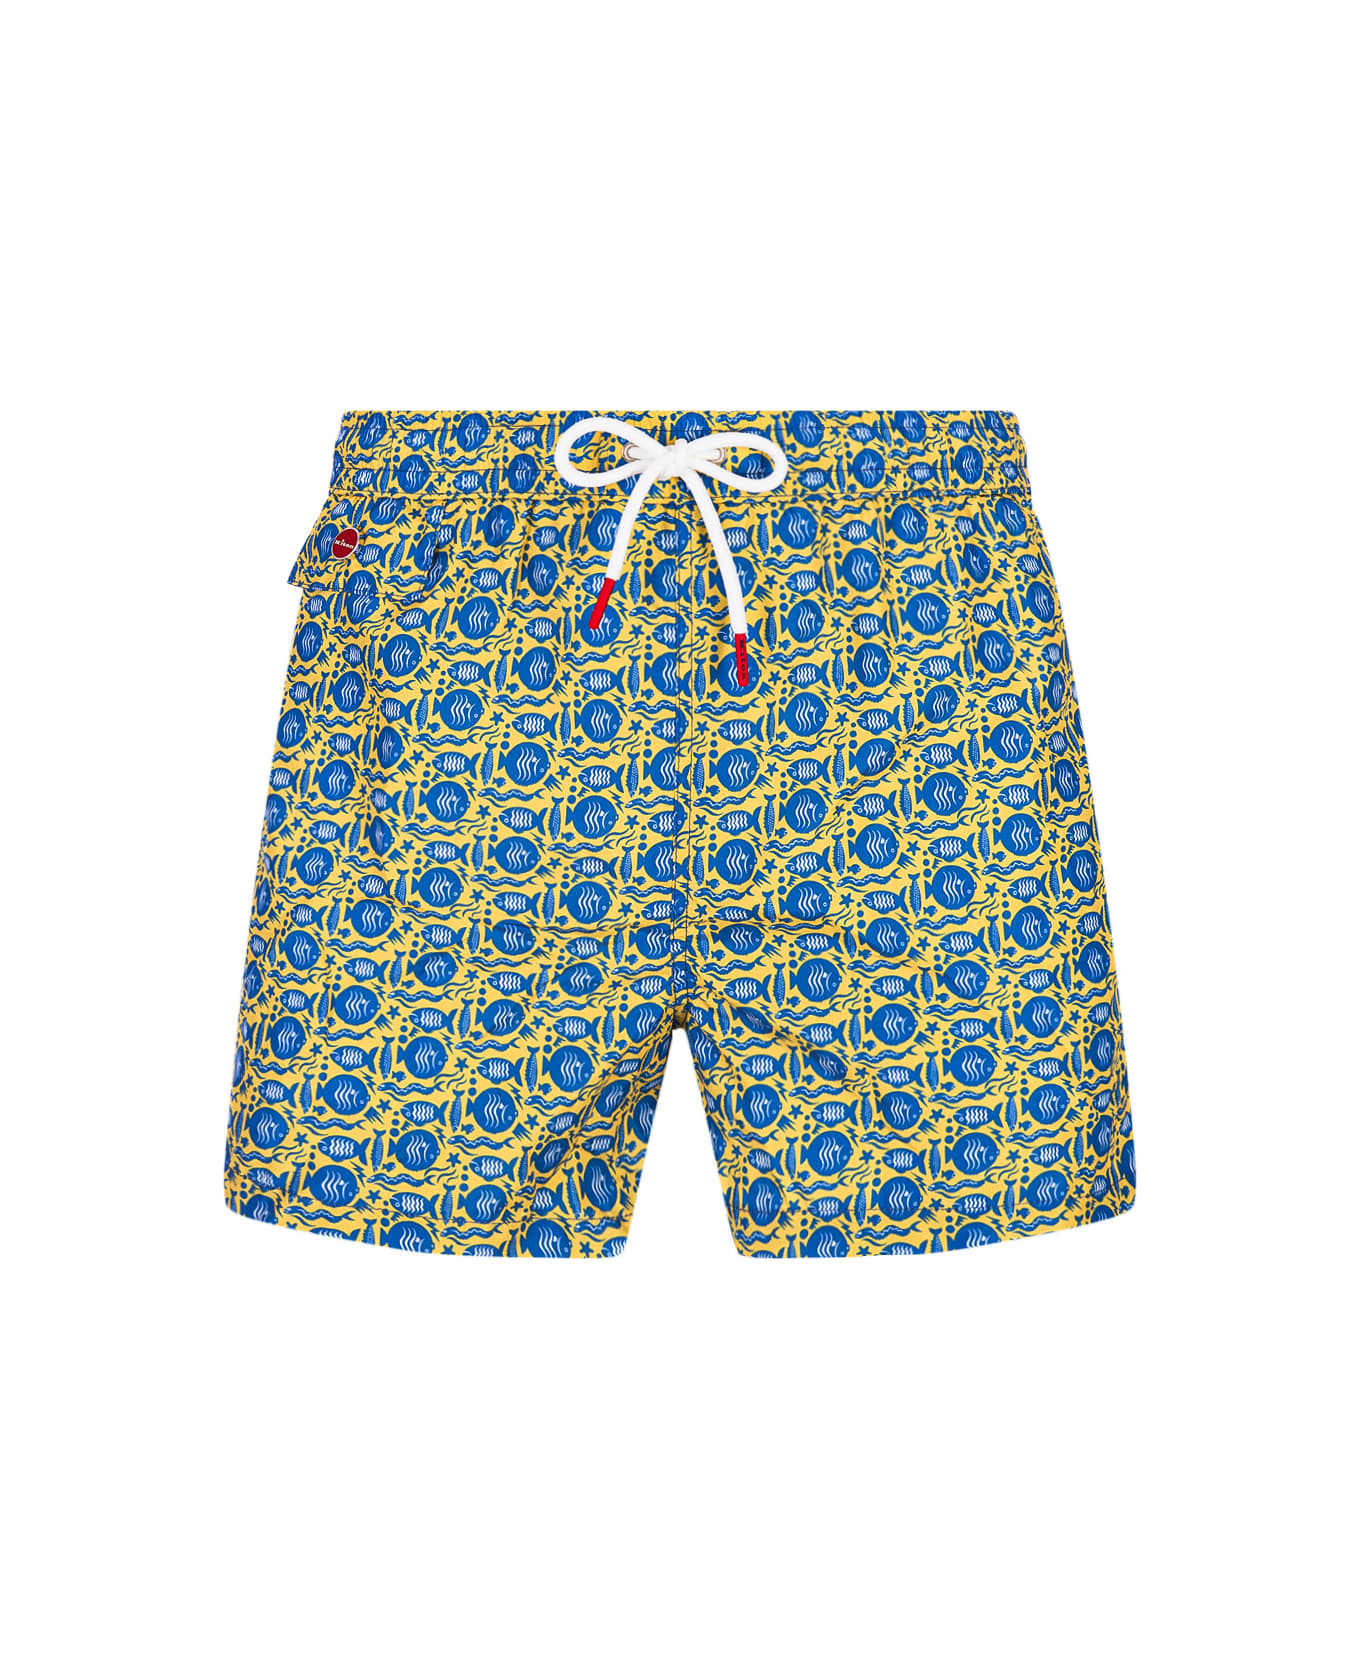 Kiton Yellow Swim Shorts With Fish Pattern - Yellow